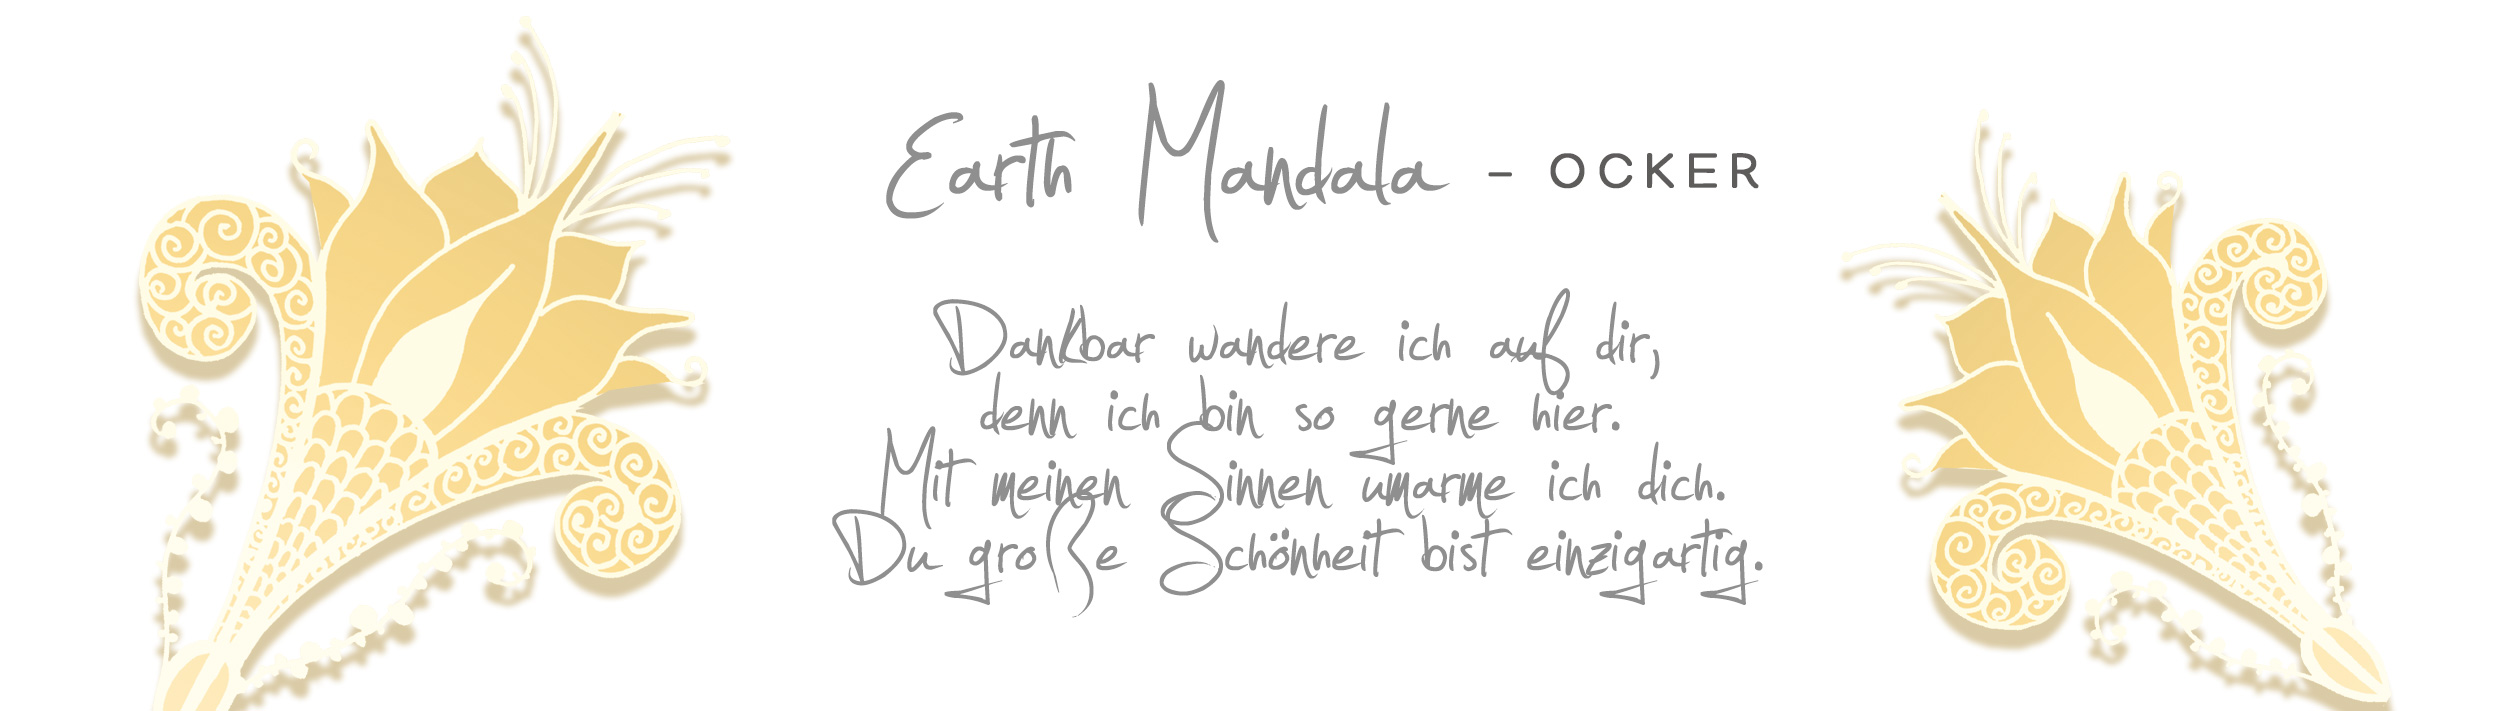 Earth Mandala Ocker